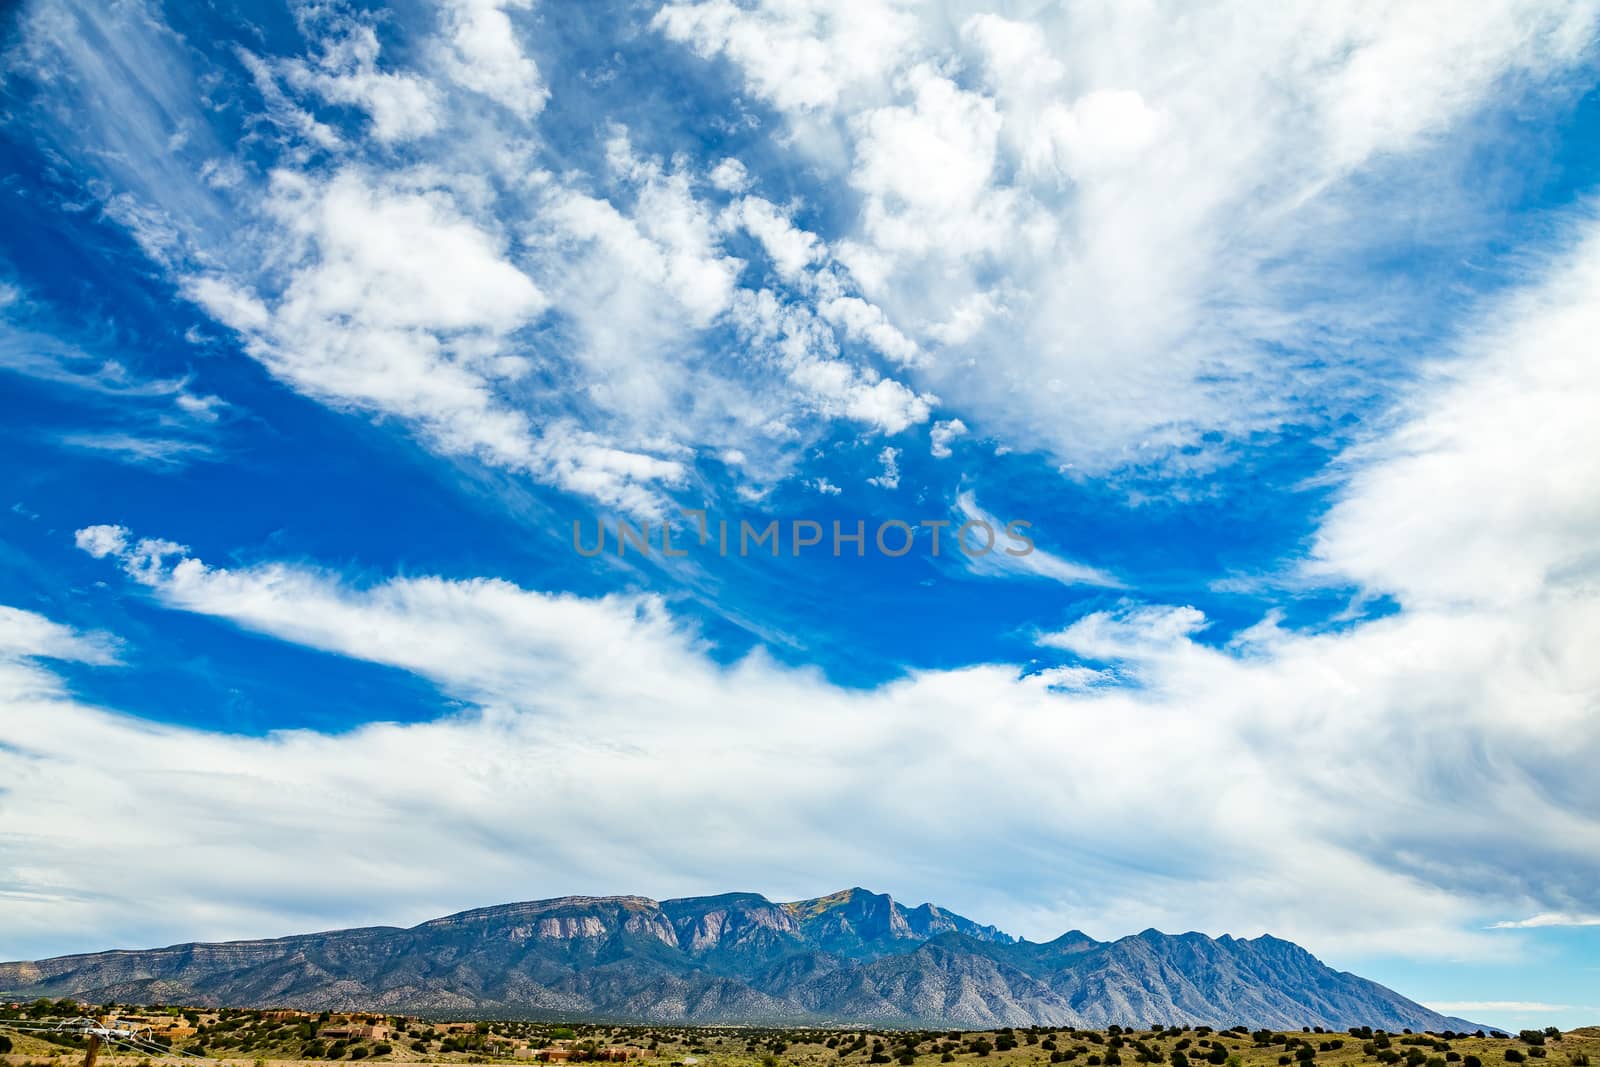 A view of Palomas Peak in the Sandia Mountains near Bernalillo, New Mexico.